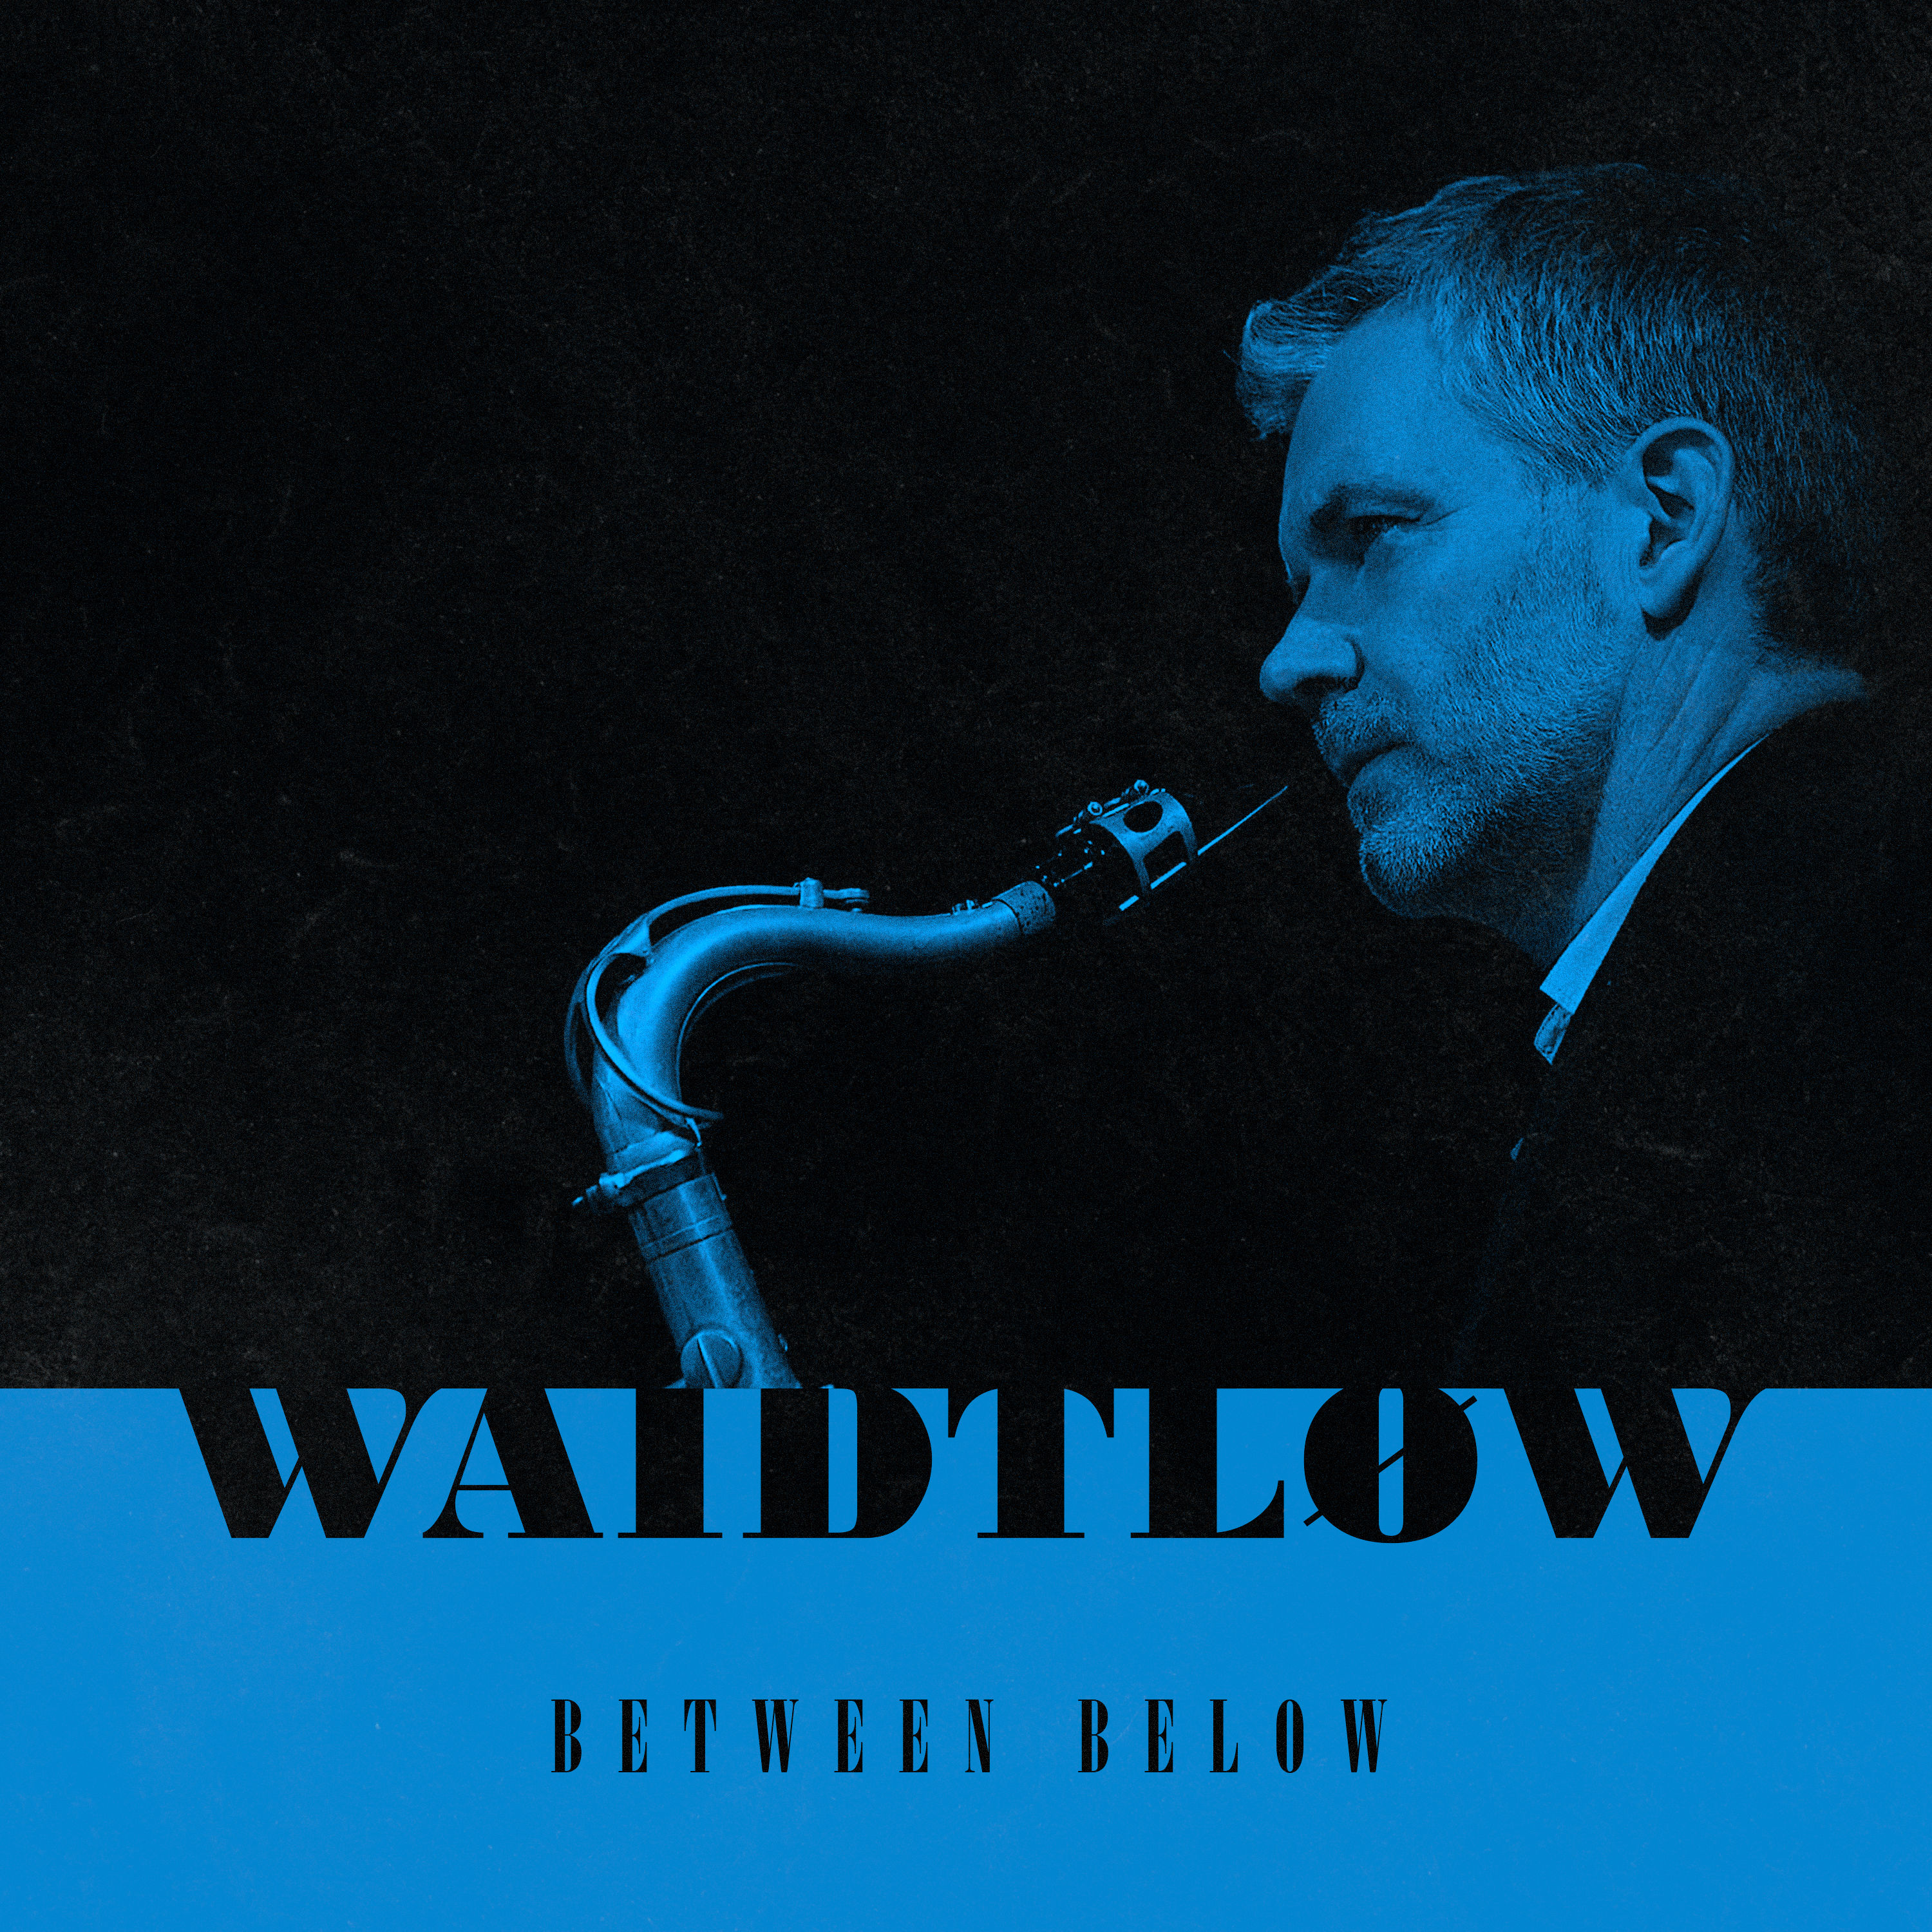 Claus Waidtlow - Between Below (2021) [FLAC 24bit/96kHz]